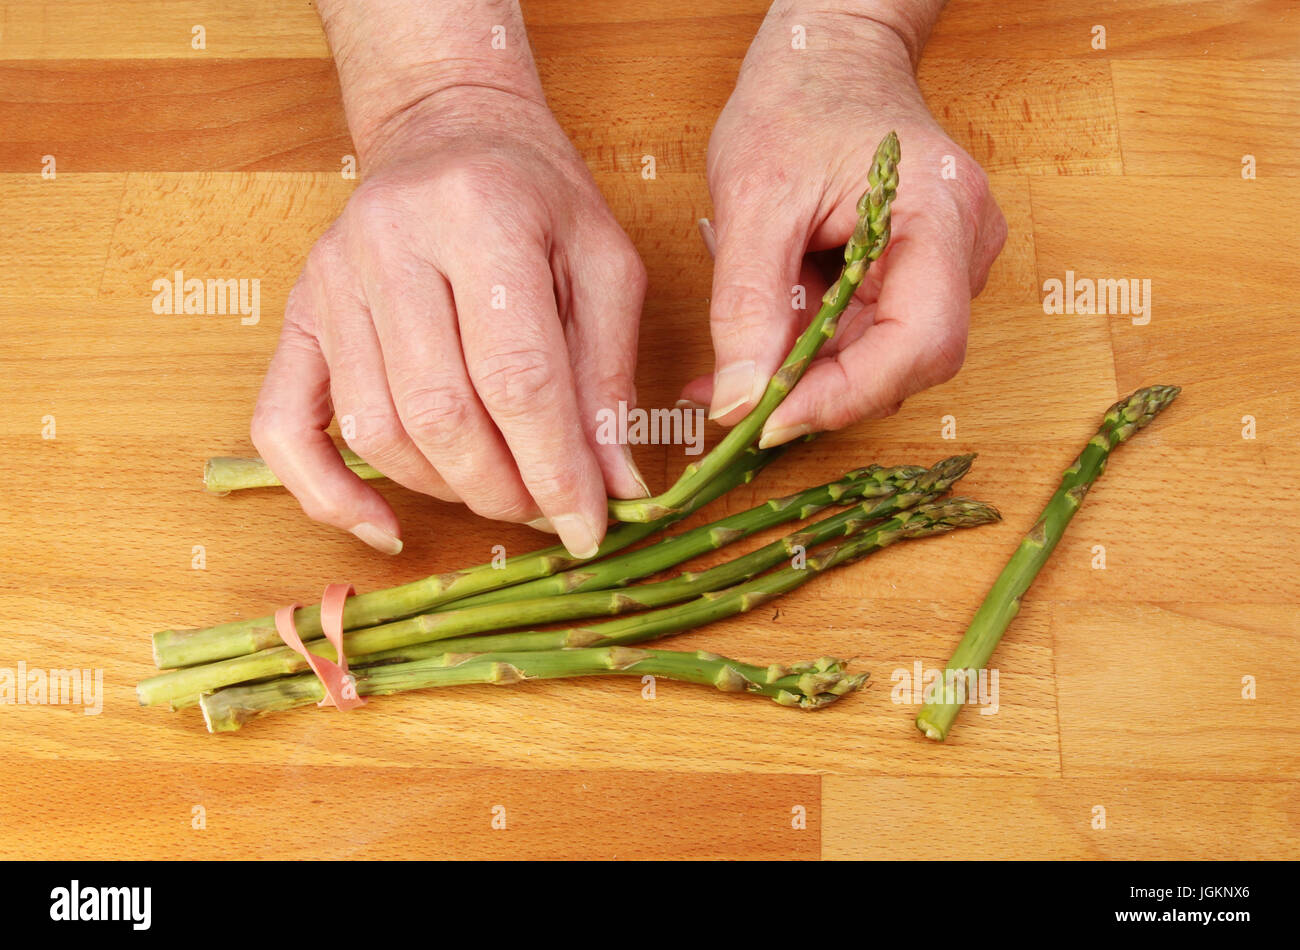 Zwei männliche Hände Vorbereitung Spargelstangen auf einem hölzernen Küchenarbeitsplatte Stockfoto